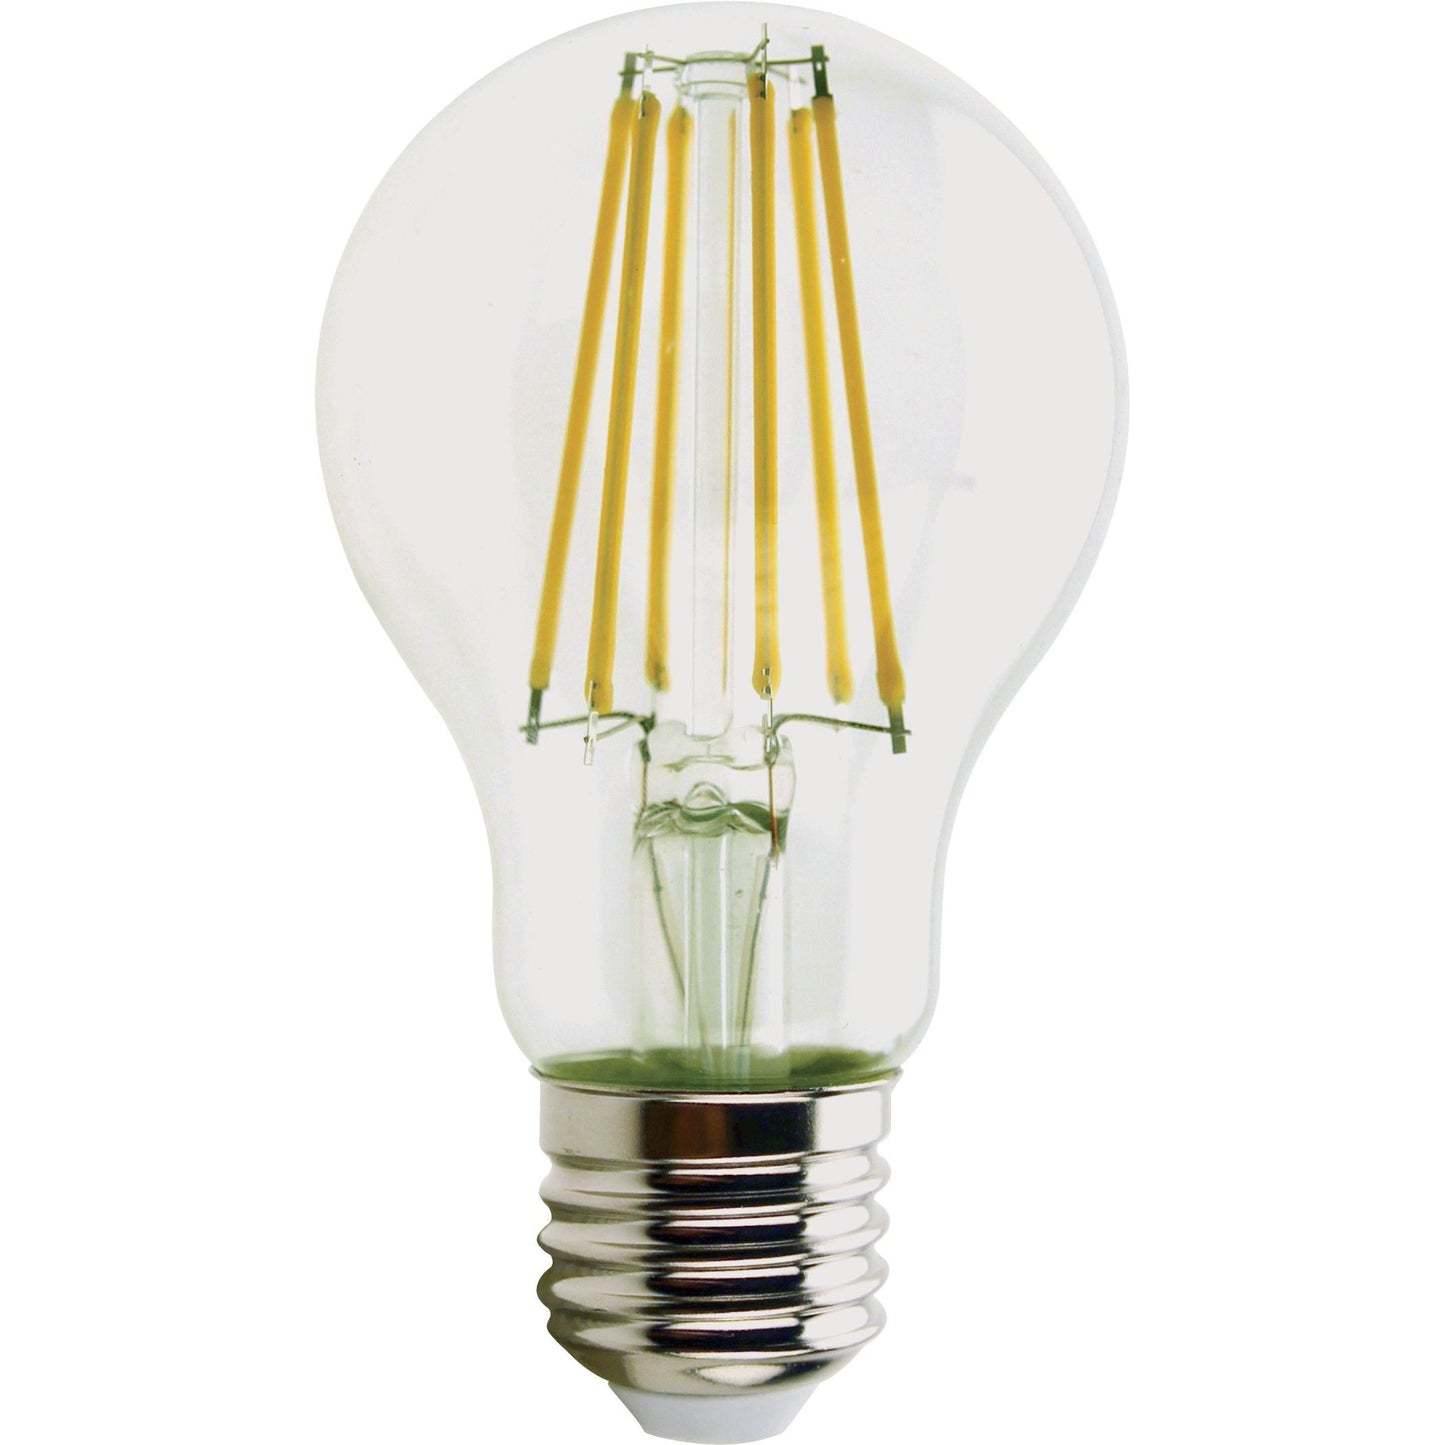 LINKLED Lampadina LED 12W, lampadina con filo led, luce naturale 4000K ad accensione immediata